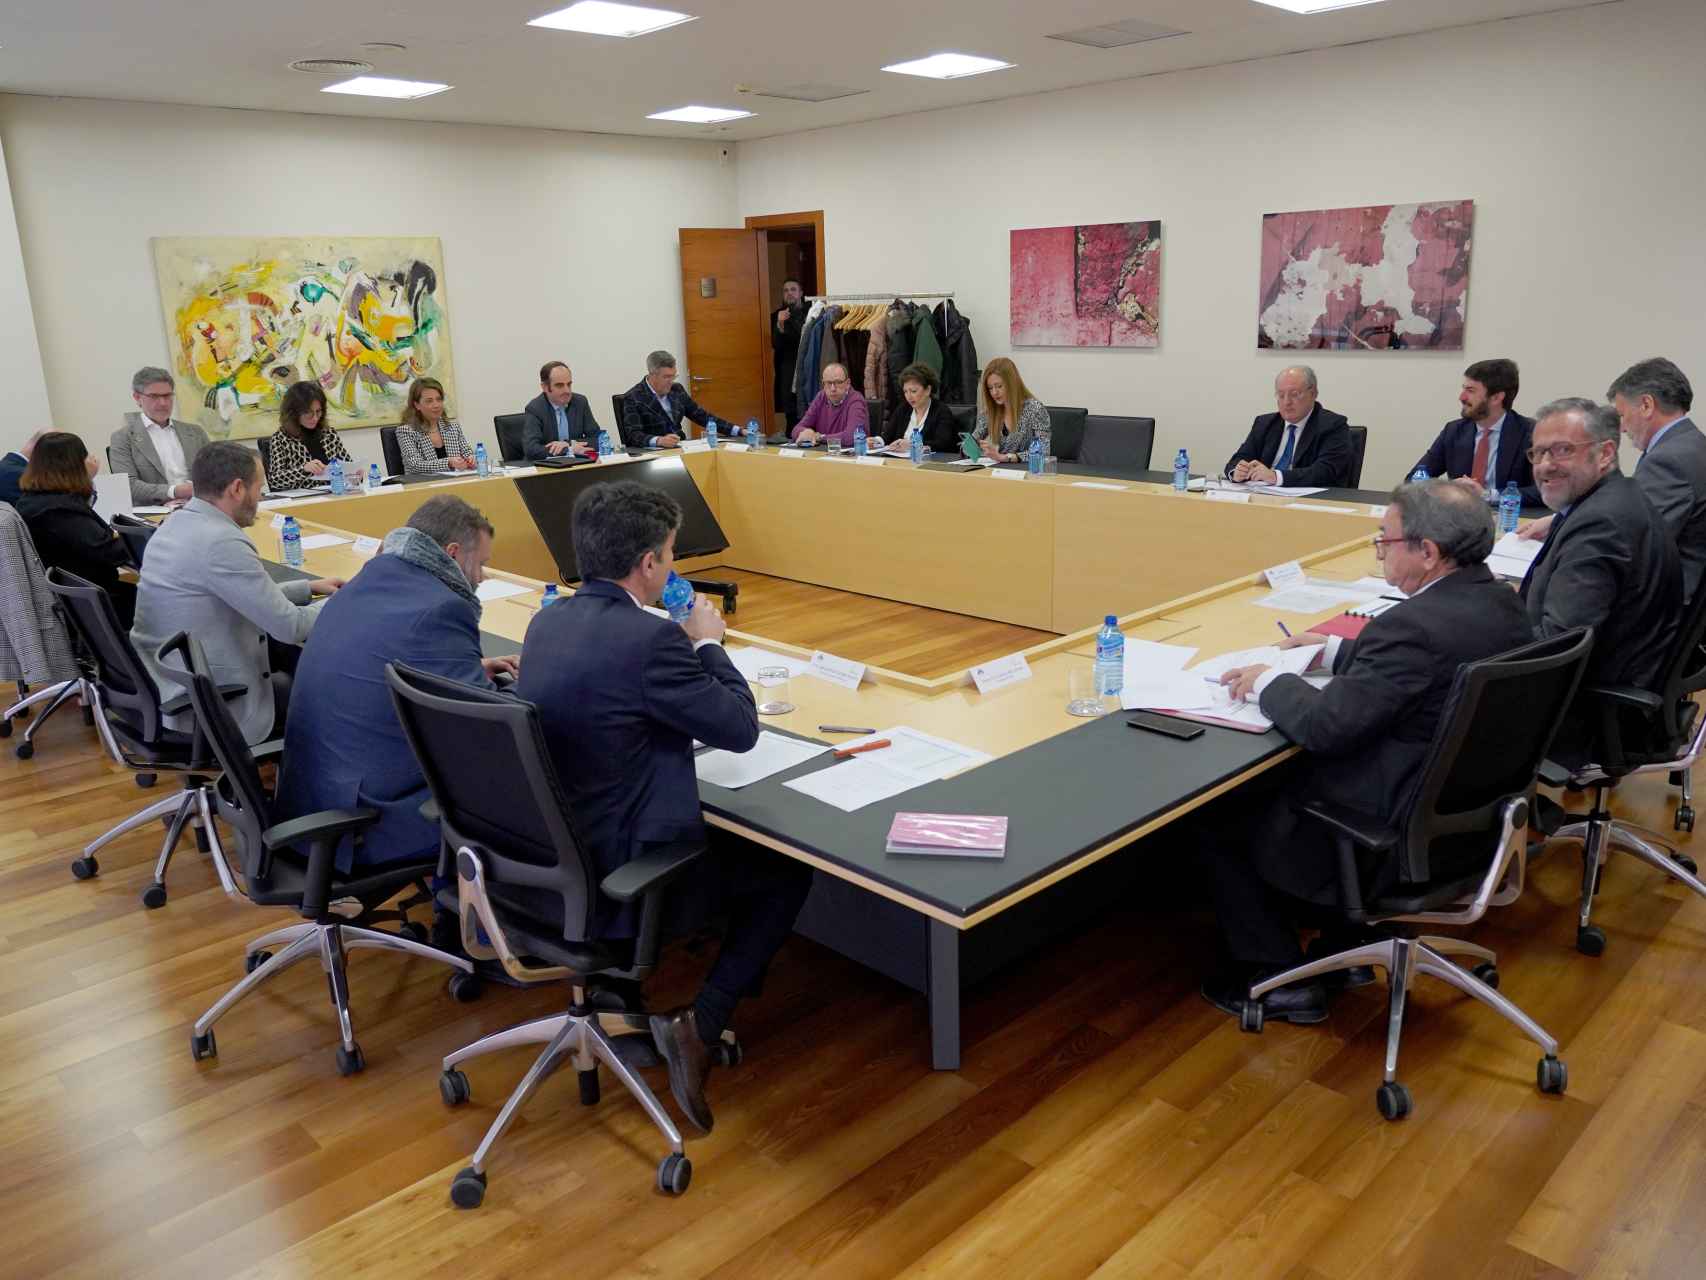 Reunión del Patronato de la Fundación Castilla y León, celebrada este miércoles en las Cortes.